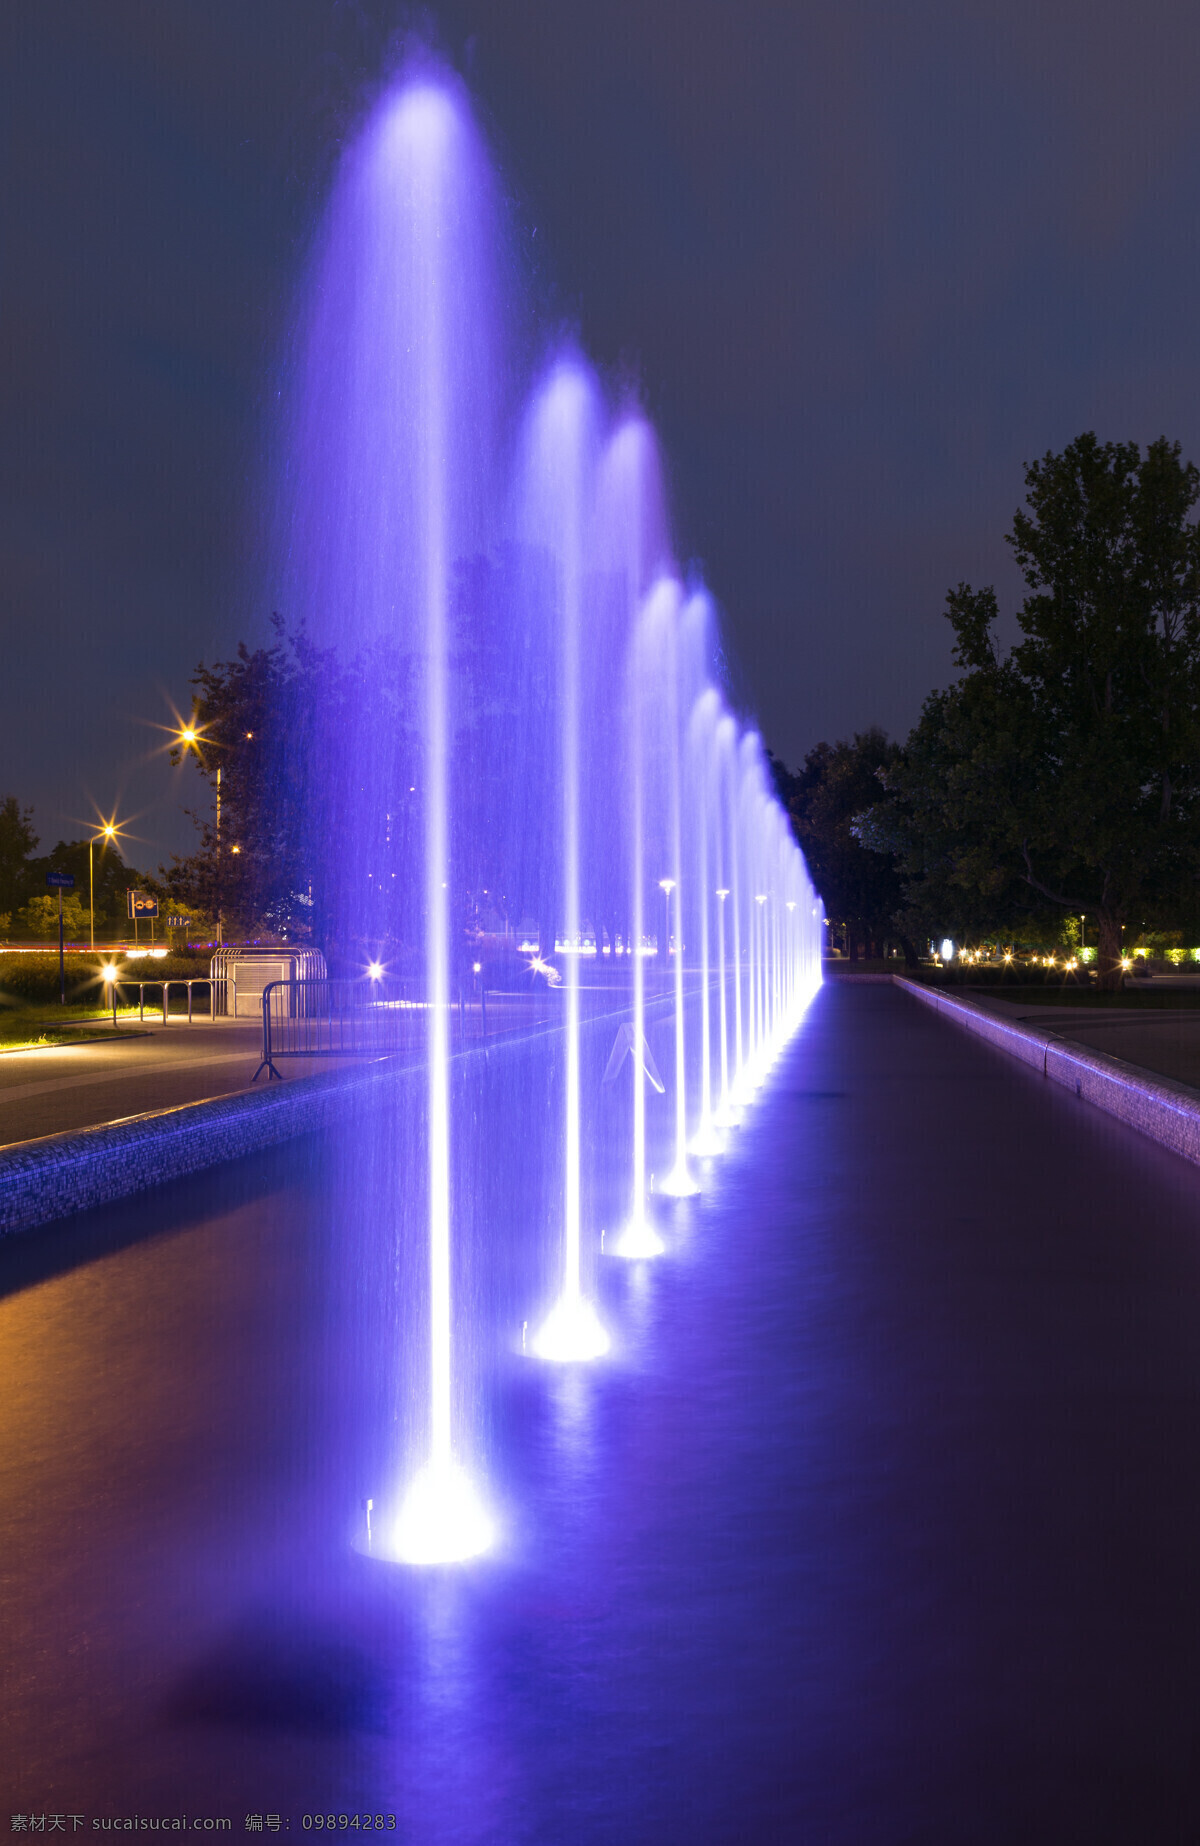 夜晚 喷泉 树 灯光 建筑物 蓝色 山水风景 风景图片